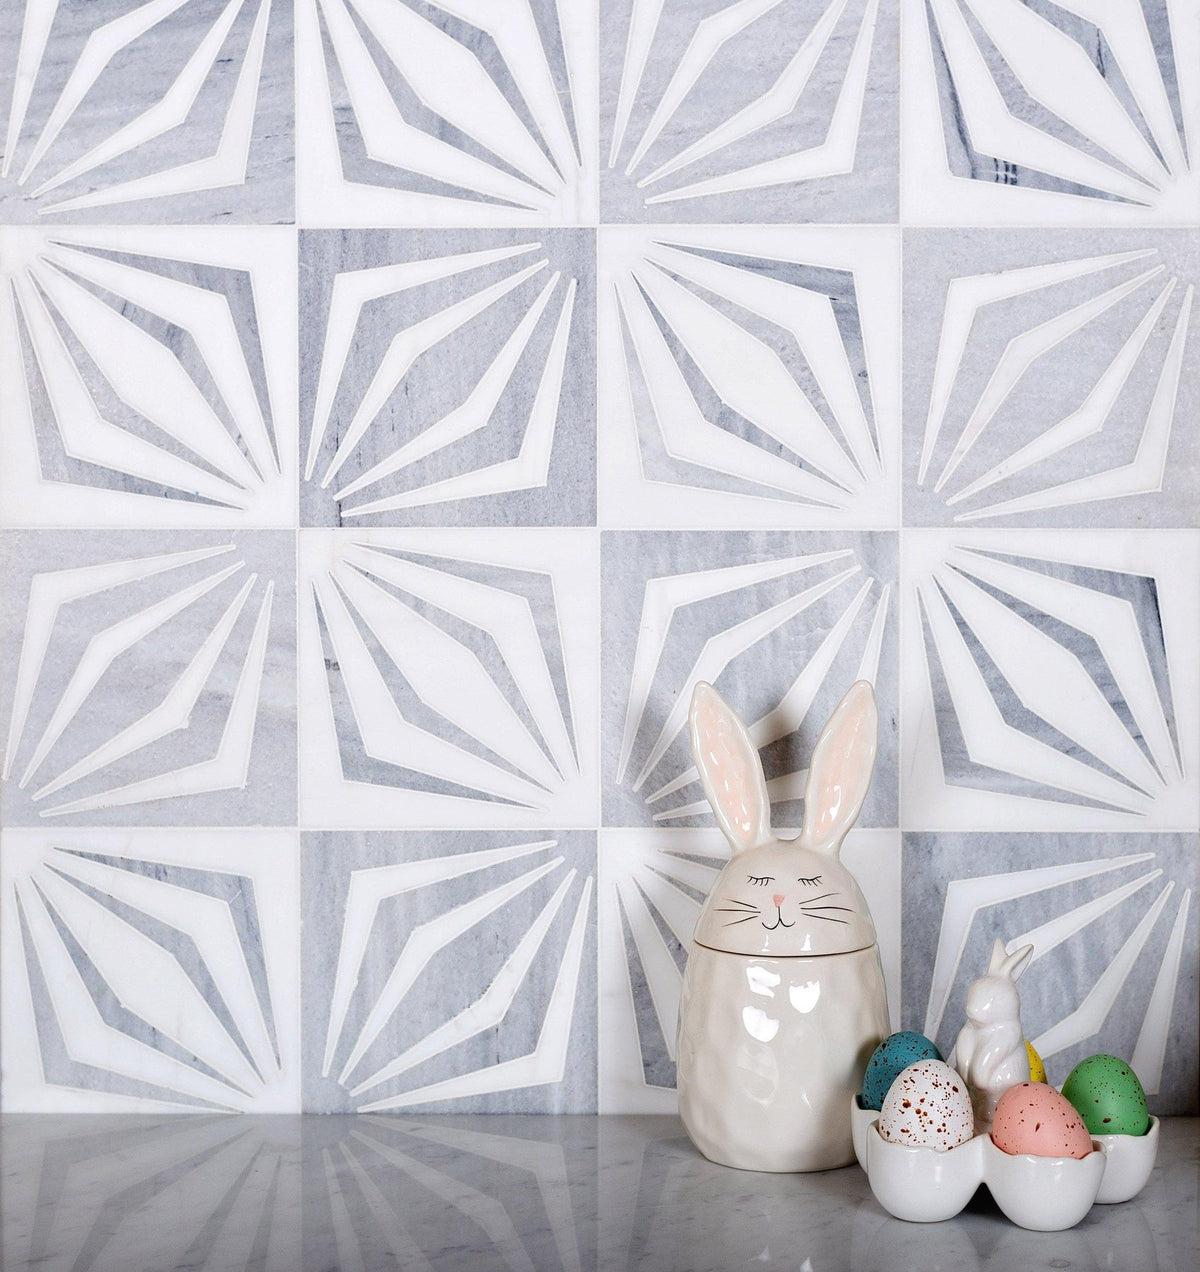 12" x 12" White Striped Diamond Marble Mosaic Tile for decor